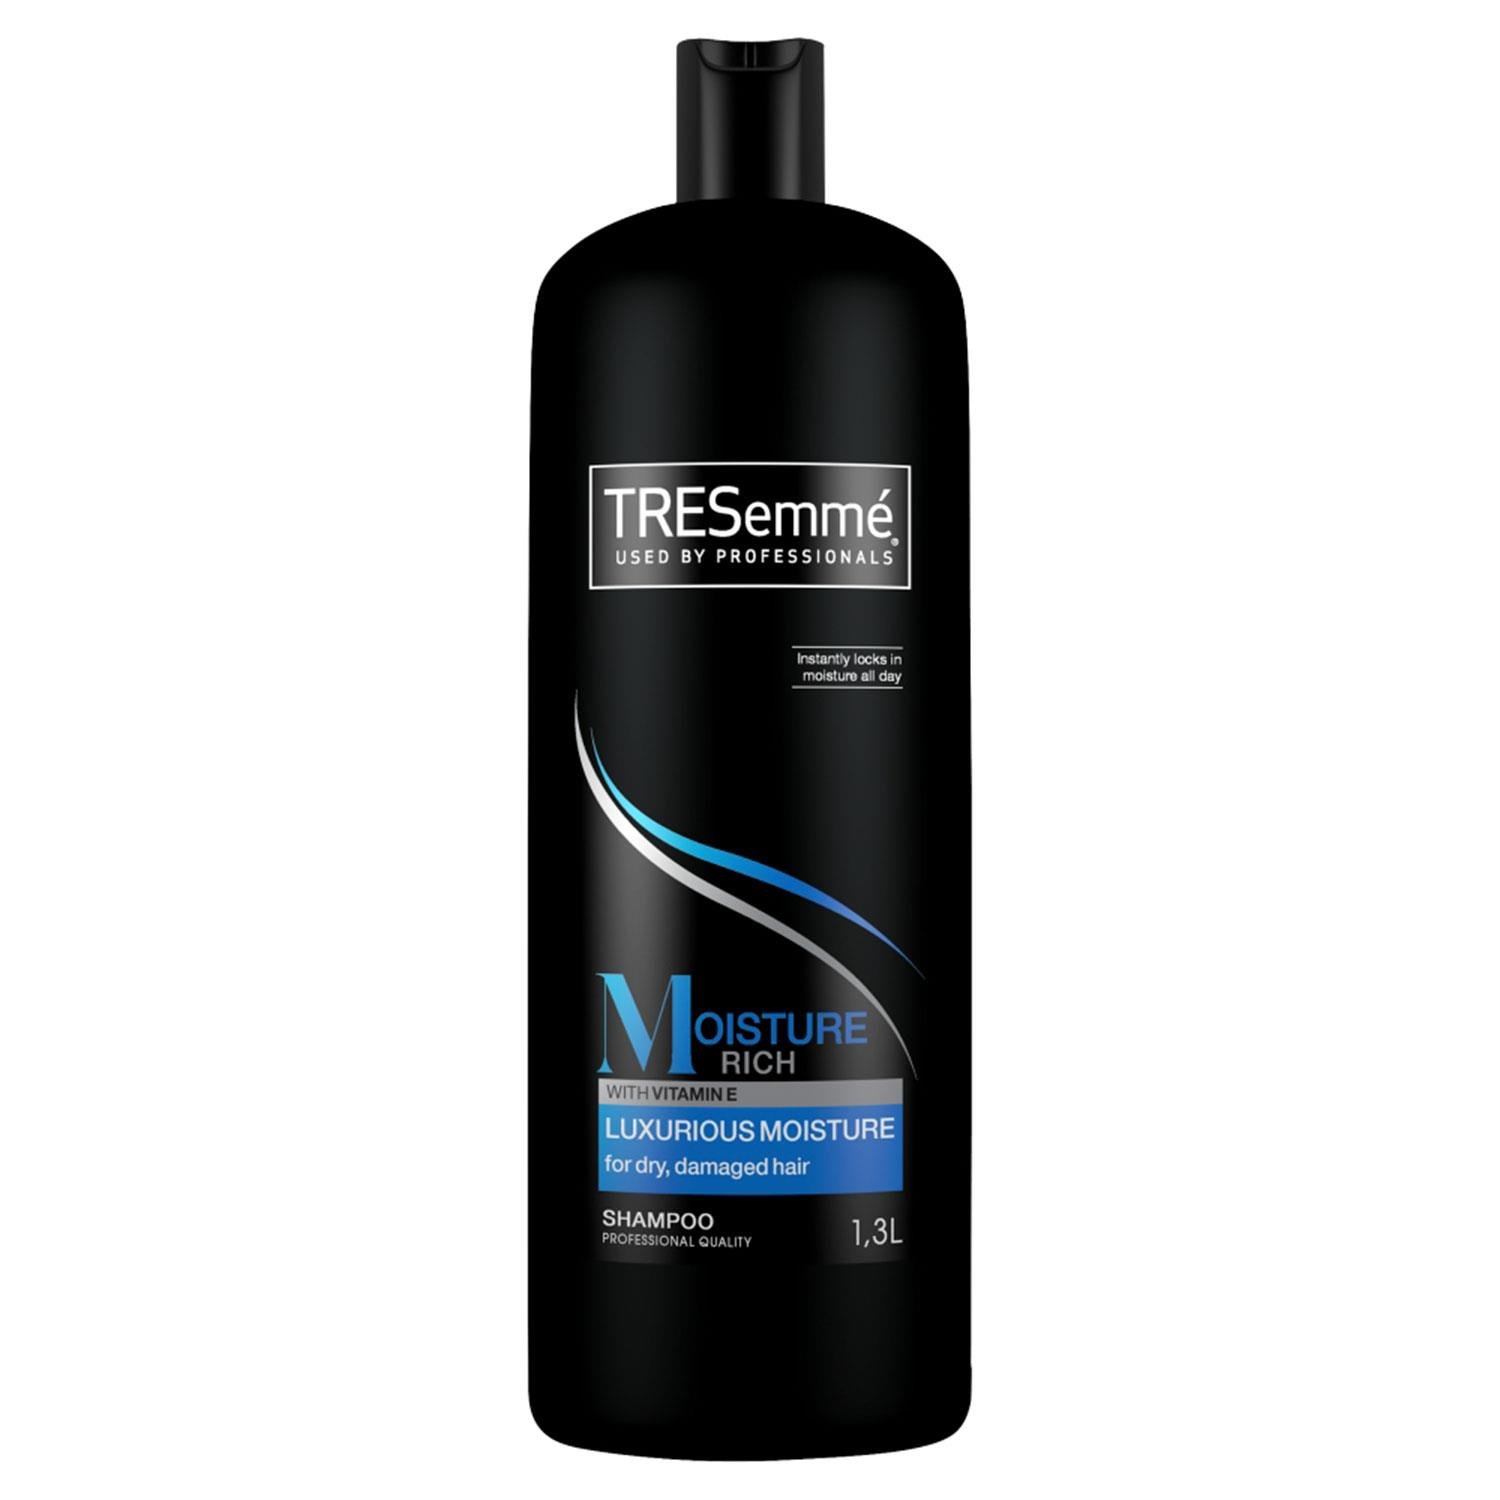 TRESemm� Moisture Rich Shampoo 1.3L